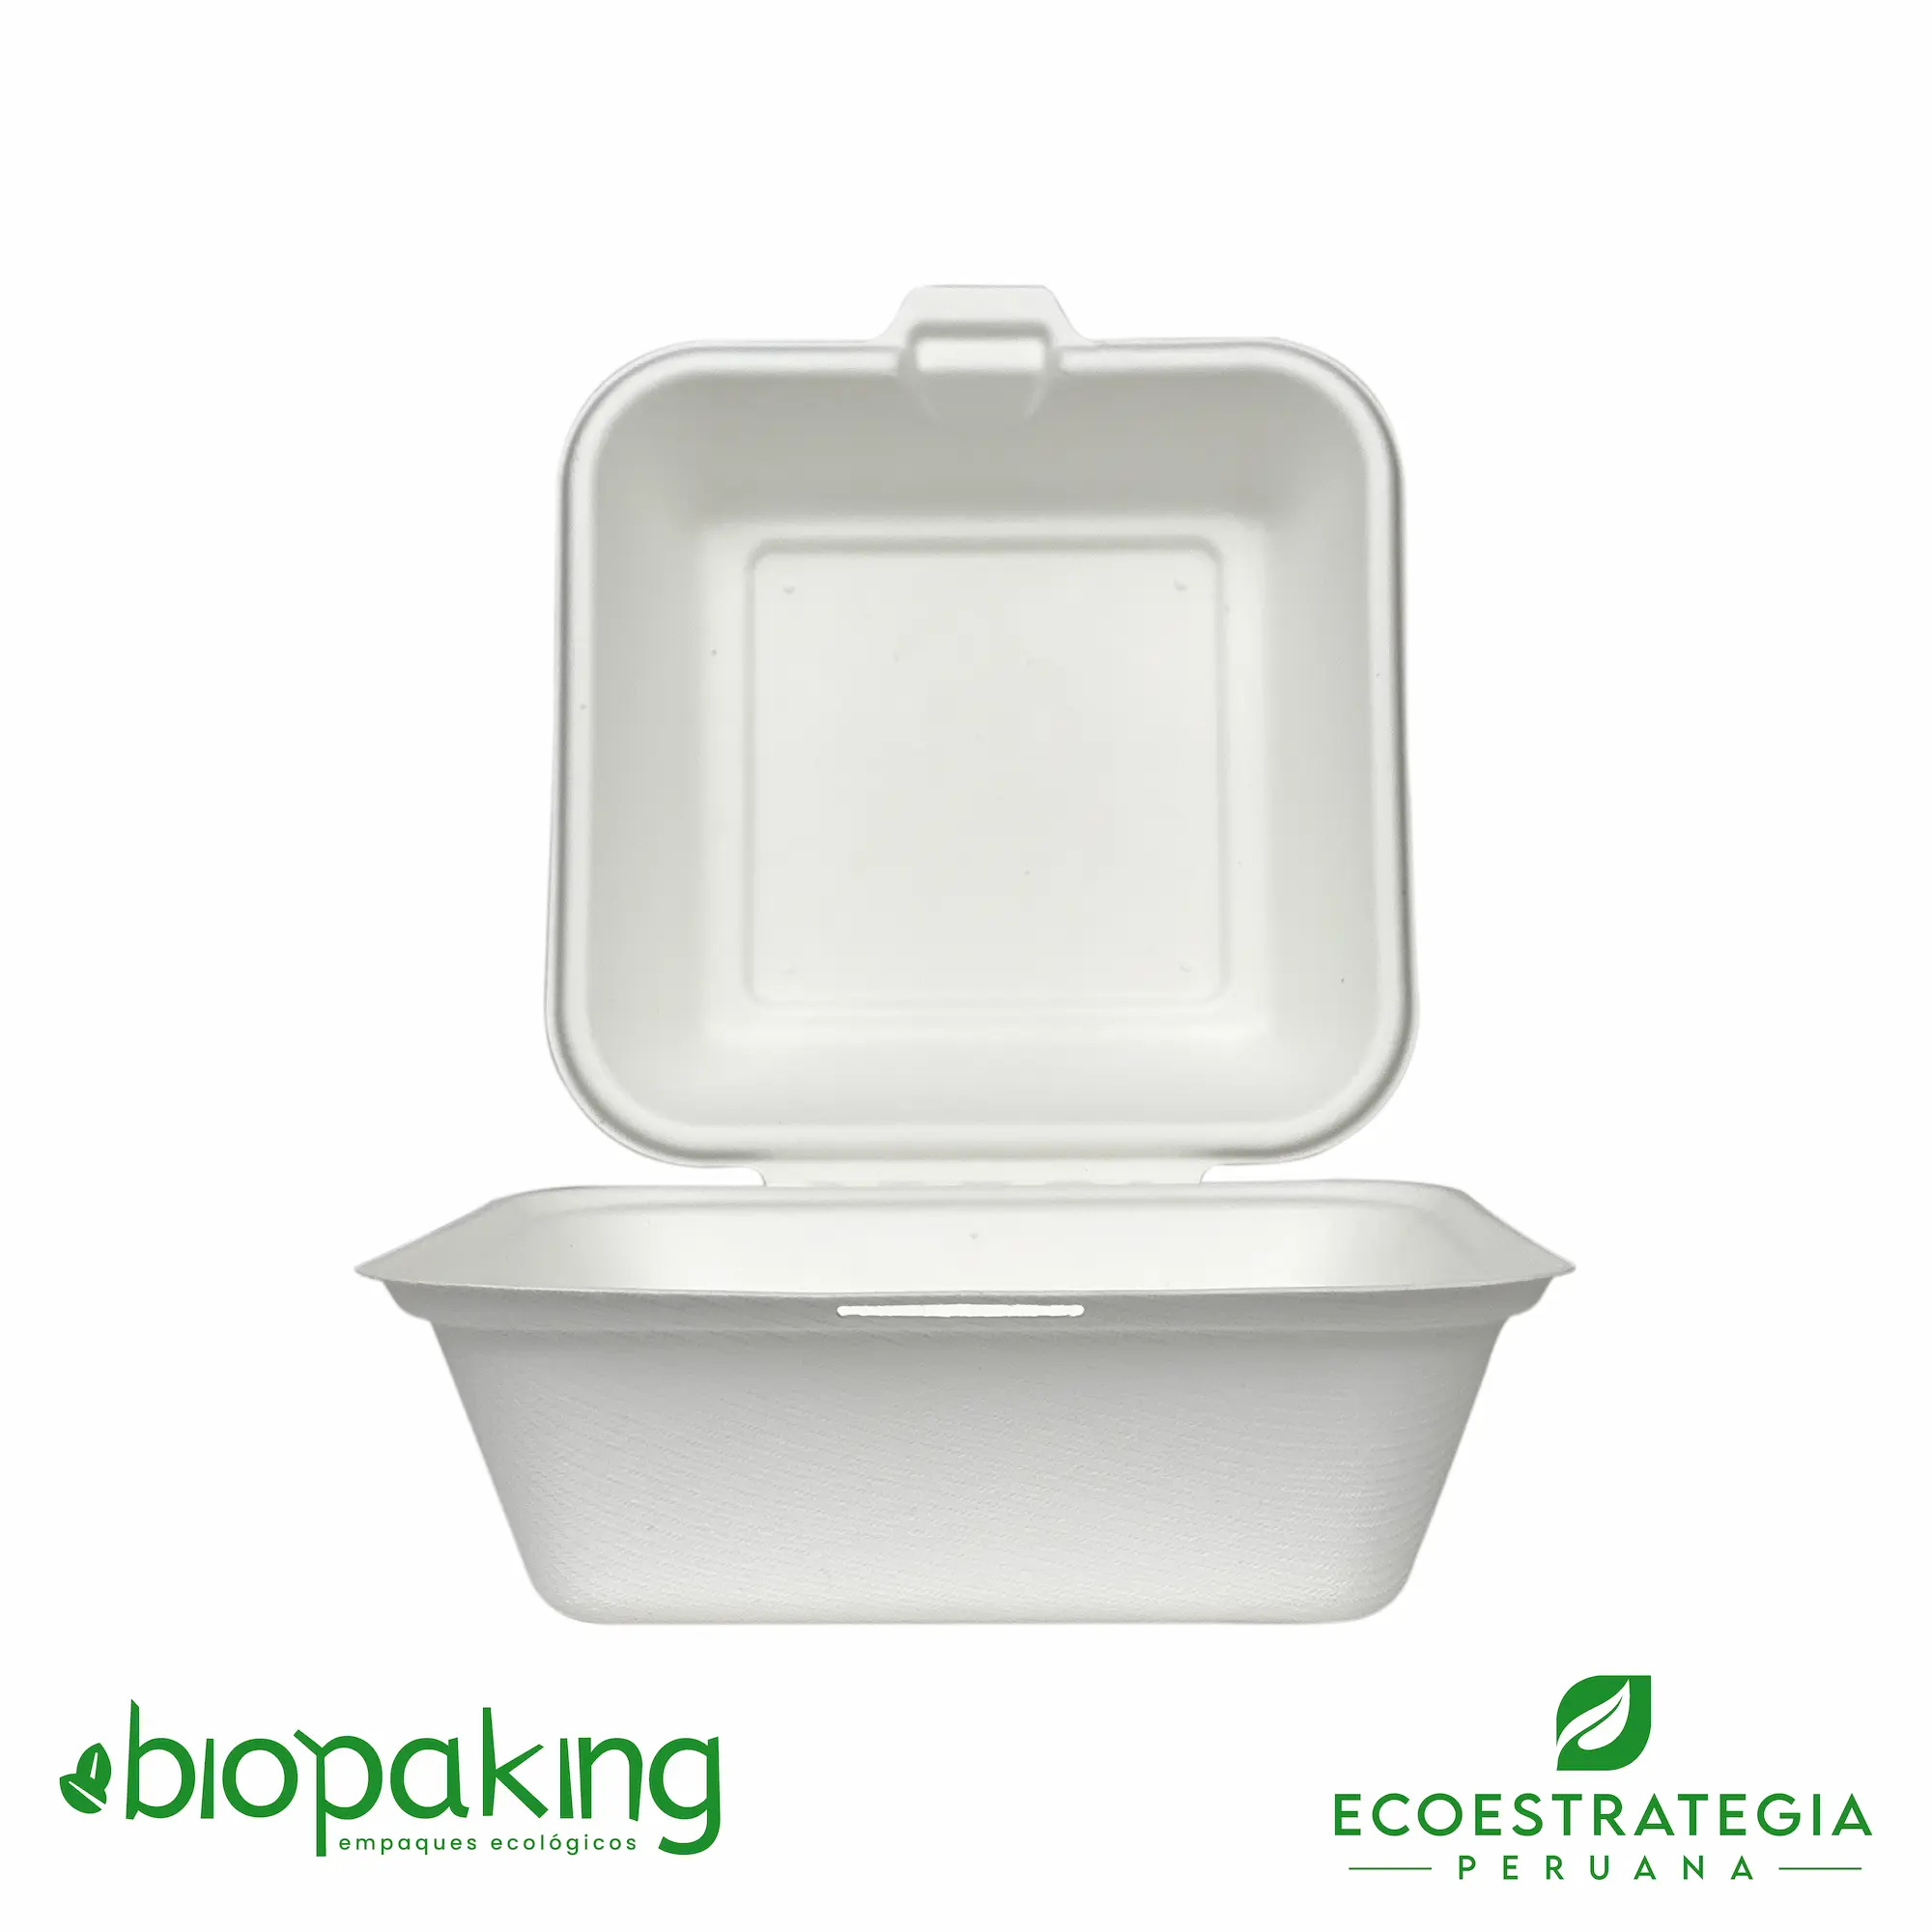 Este envase CT4 tiene una capacidad de 480ml. Producto de materiales biodegradables, hecho a base de fibra de caña de azúcar, empaques y tapers para comidas